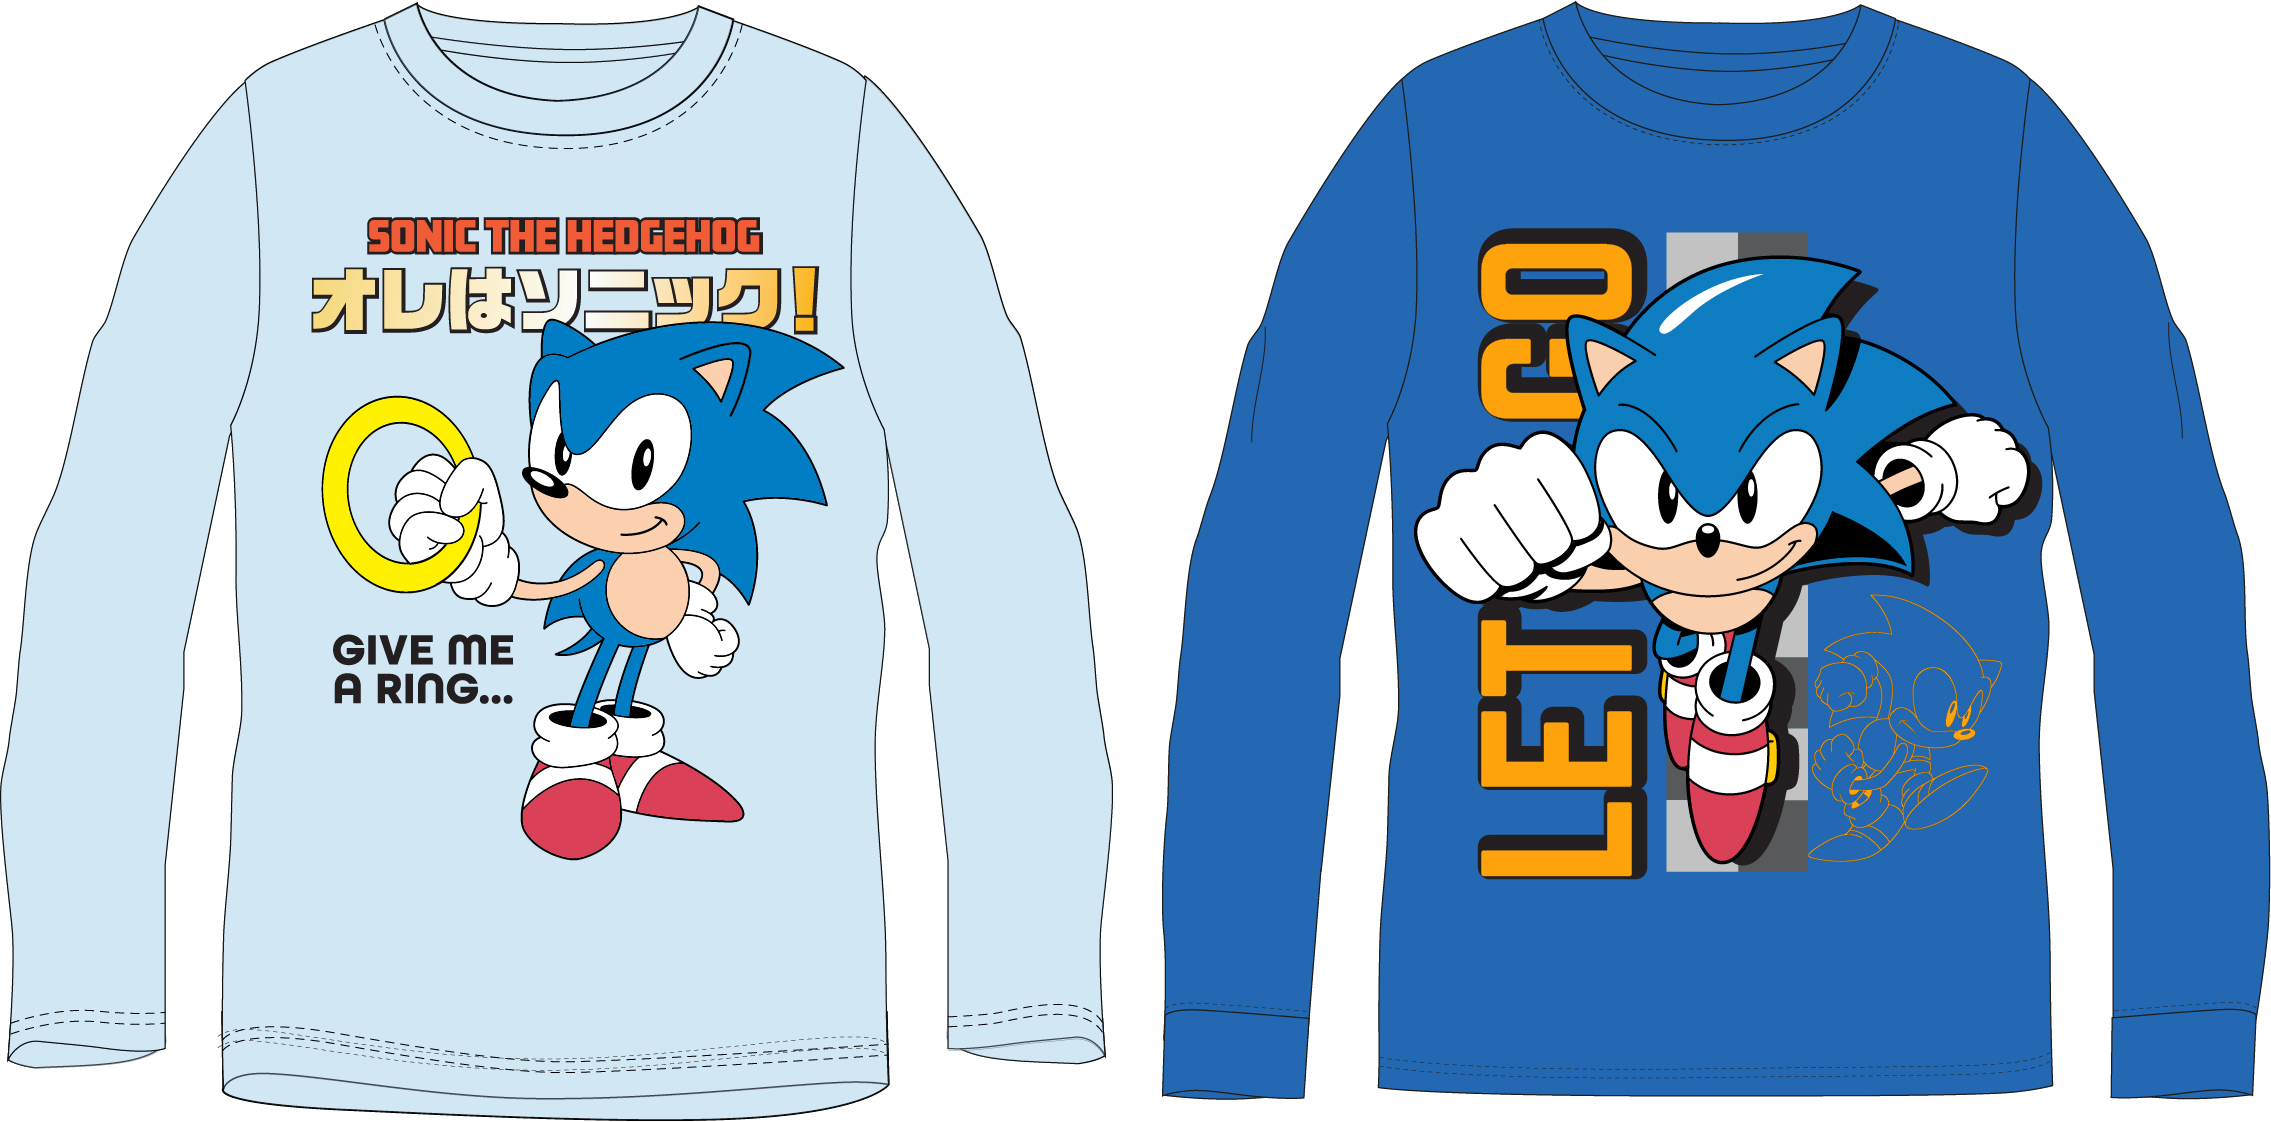 Ježek SONIC - licence Chlapecké tričko - Ježek Sonic 5202109, modrá Barva: Modrá, Velikost: 152